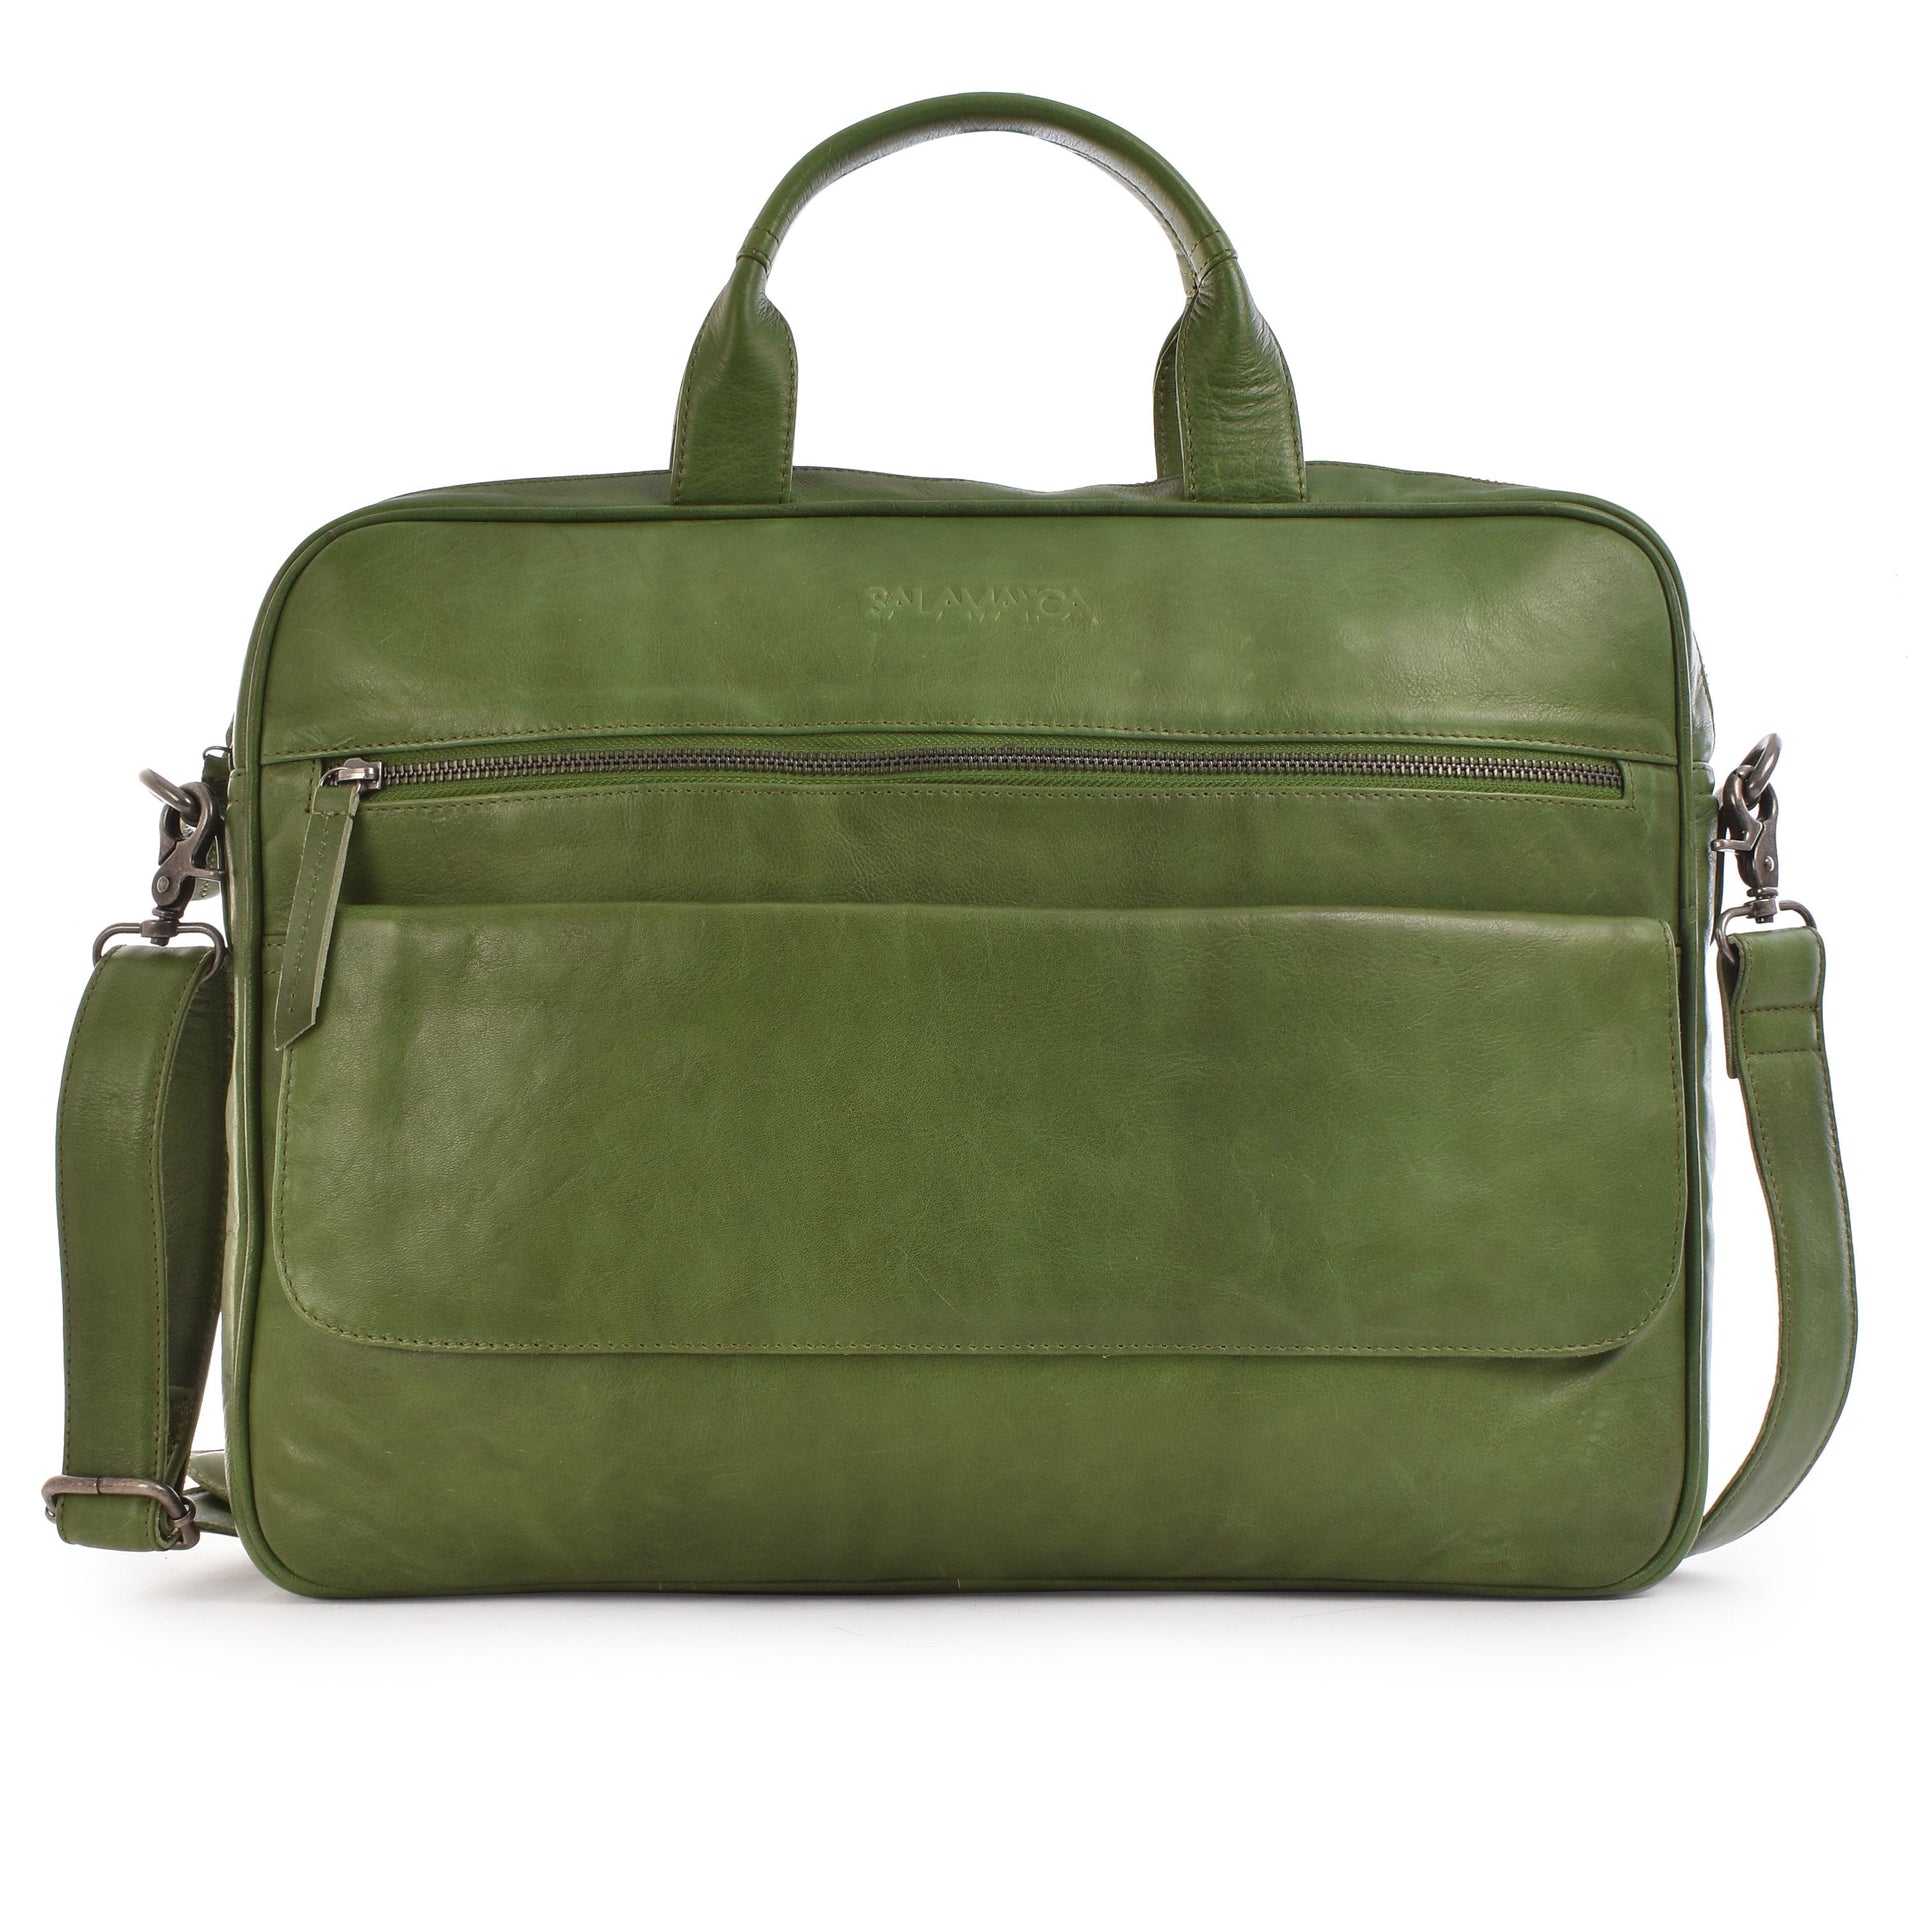 StrapIt Business Bag - Leaf Green - Laptop Bags